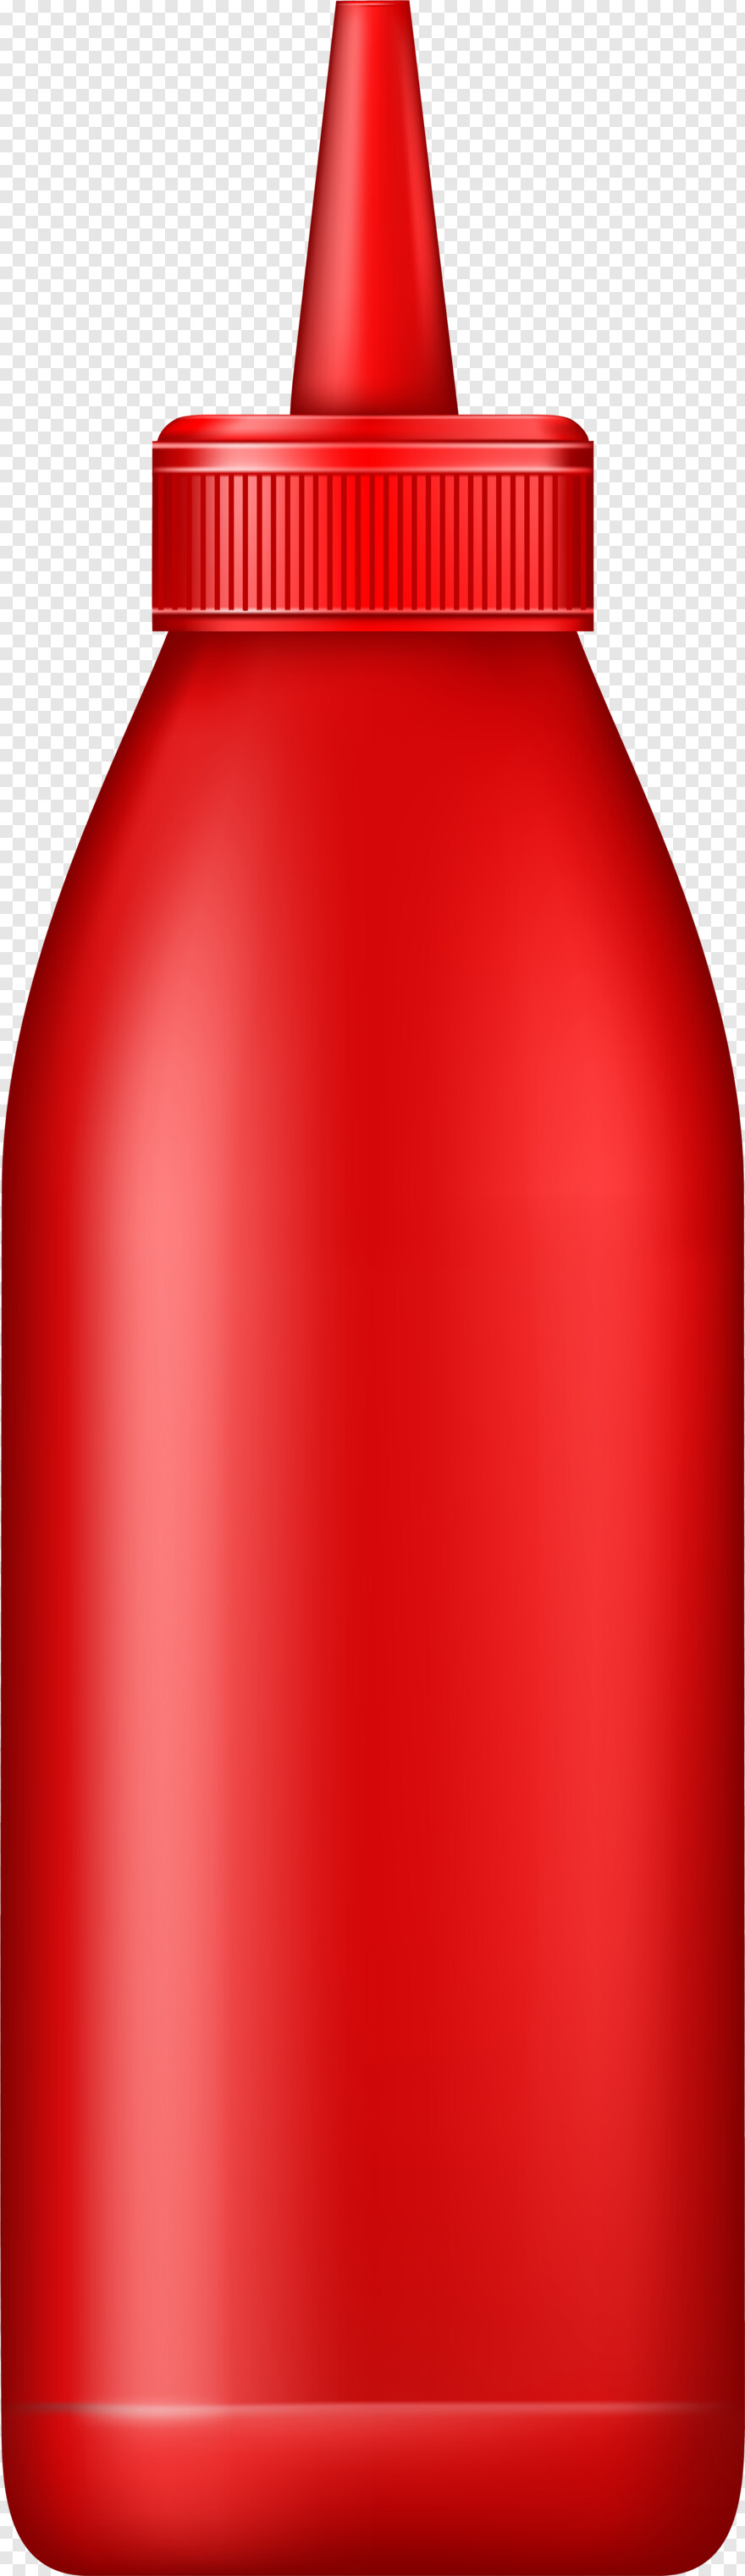 ketchup-bottle # 326392